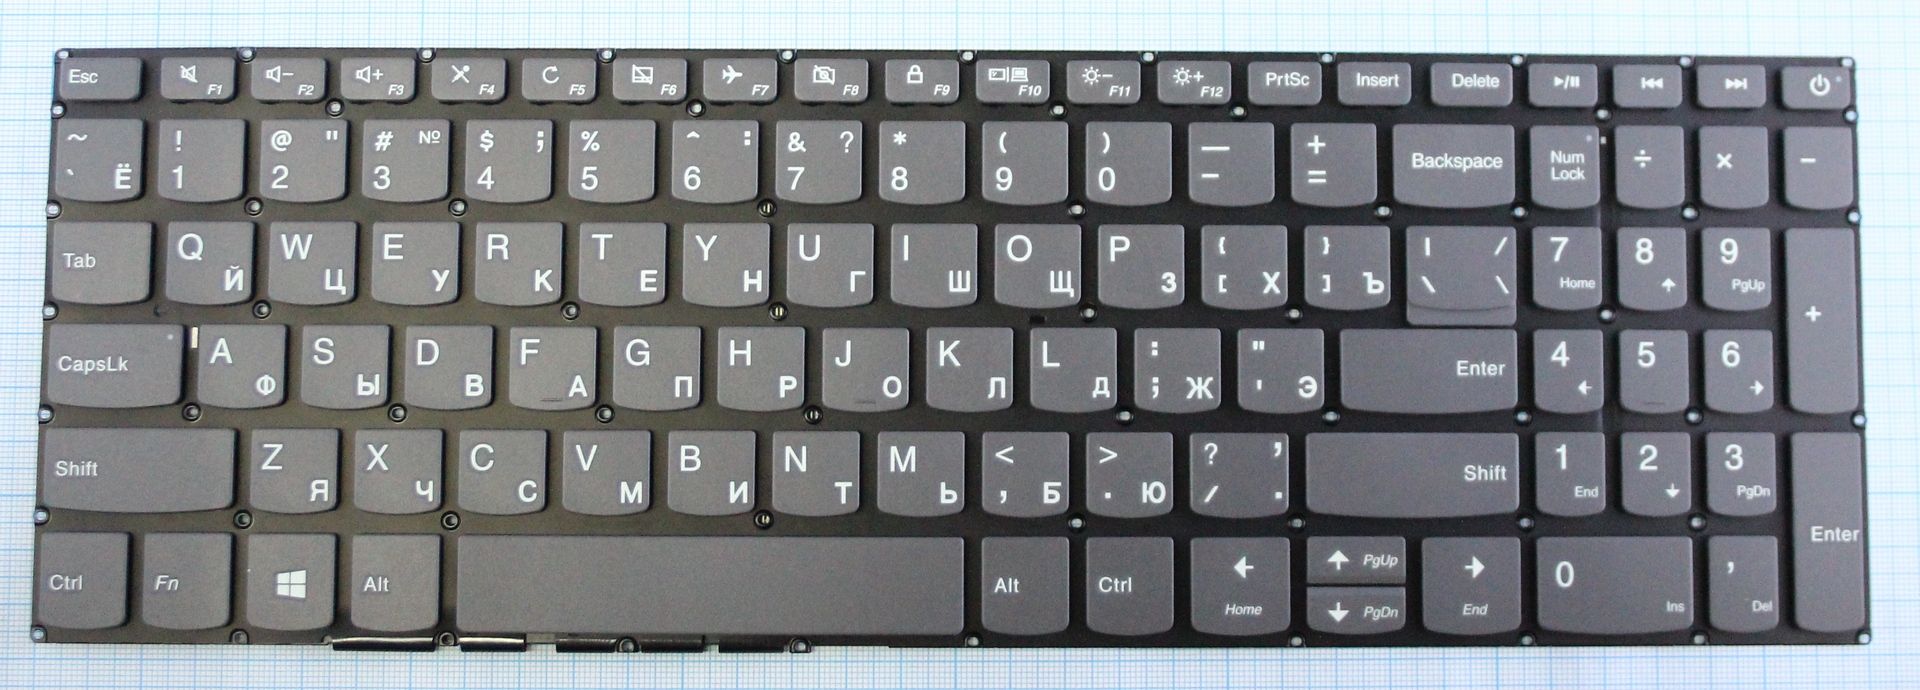 как выглядит клавиатура компьютера фото русская